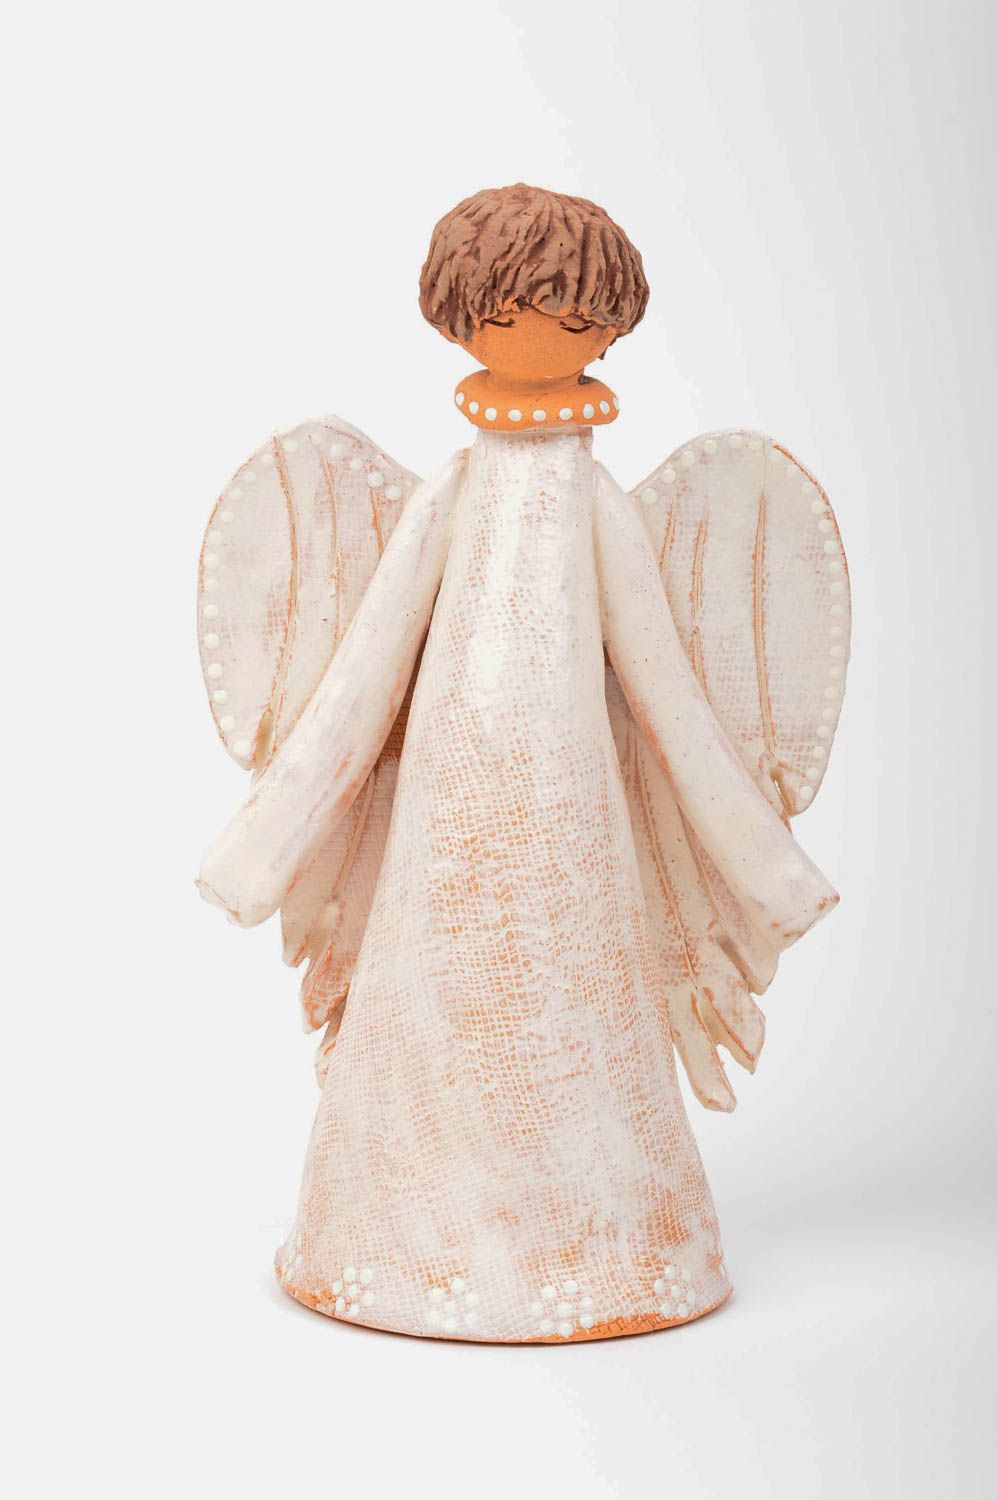 Глиняная статуэтка ручной работы фигурка ангела статуэтка для интерьера фото 3